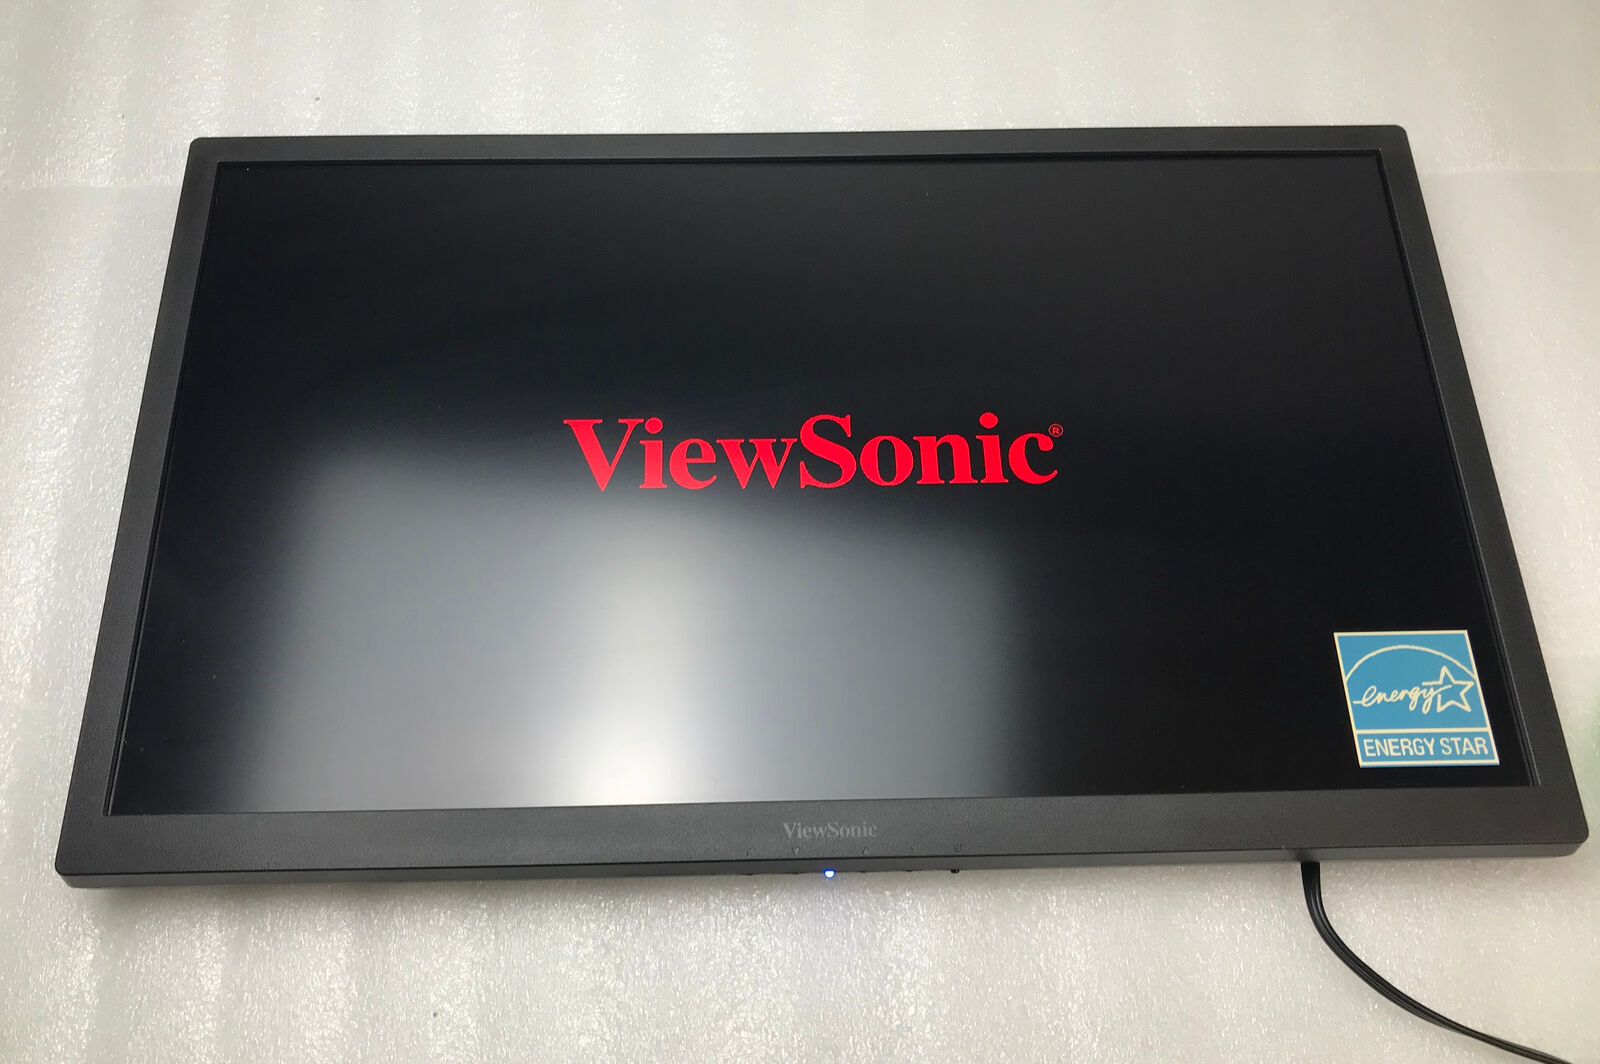 ViewSonic VG2847Smh VS15882 28